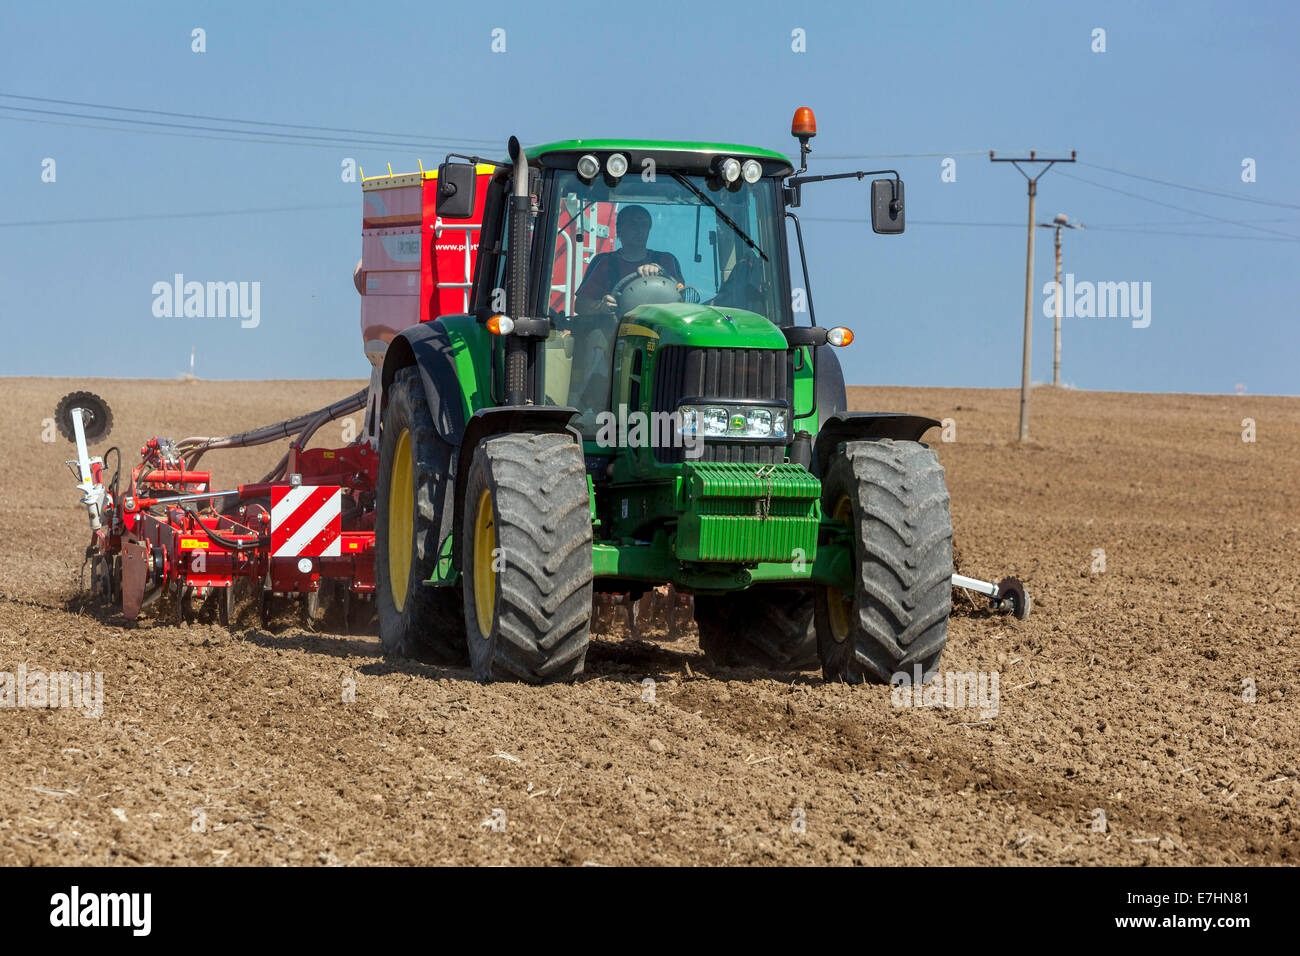 John Deere Traktor sät Samen auf einem Feld, Weizen, Saisonarbeit, Tschechische Republik Landwirt Stockfoto